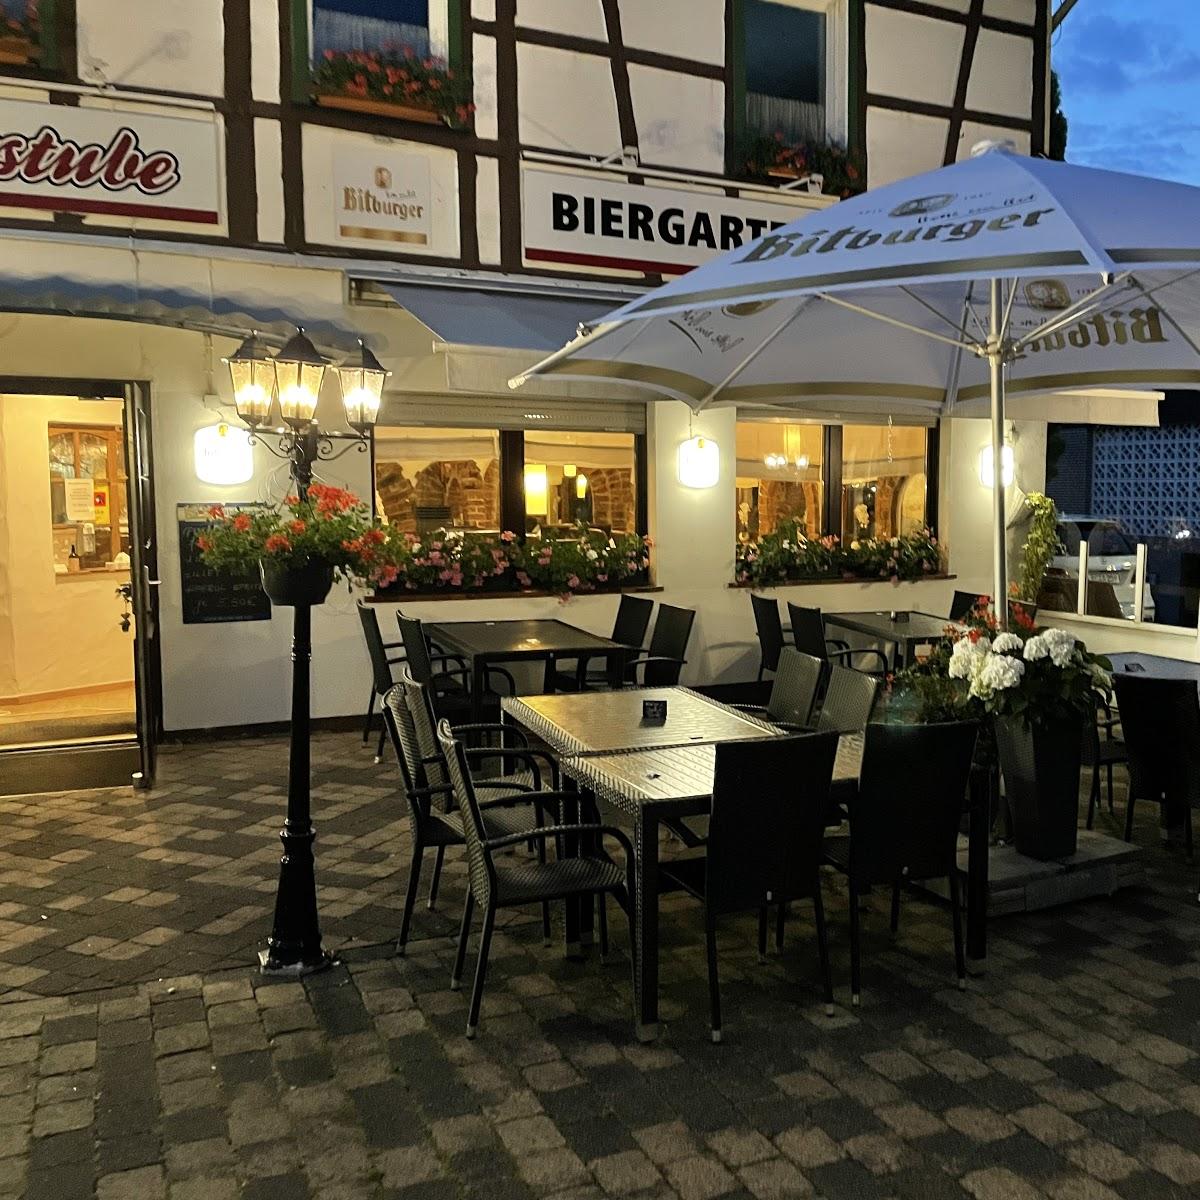 Restaurant "Steaks & Co. Marktstube Biergarten" in Roetgen